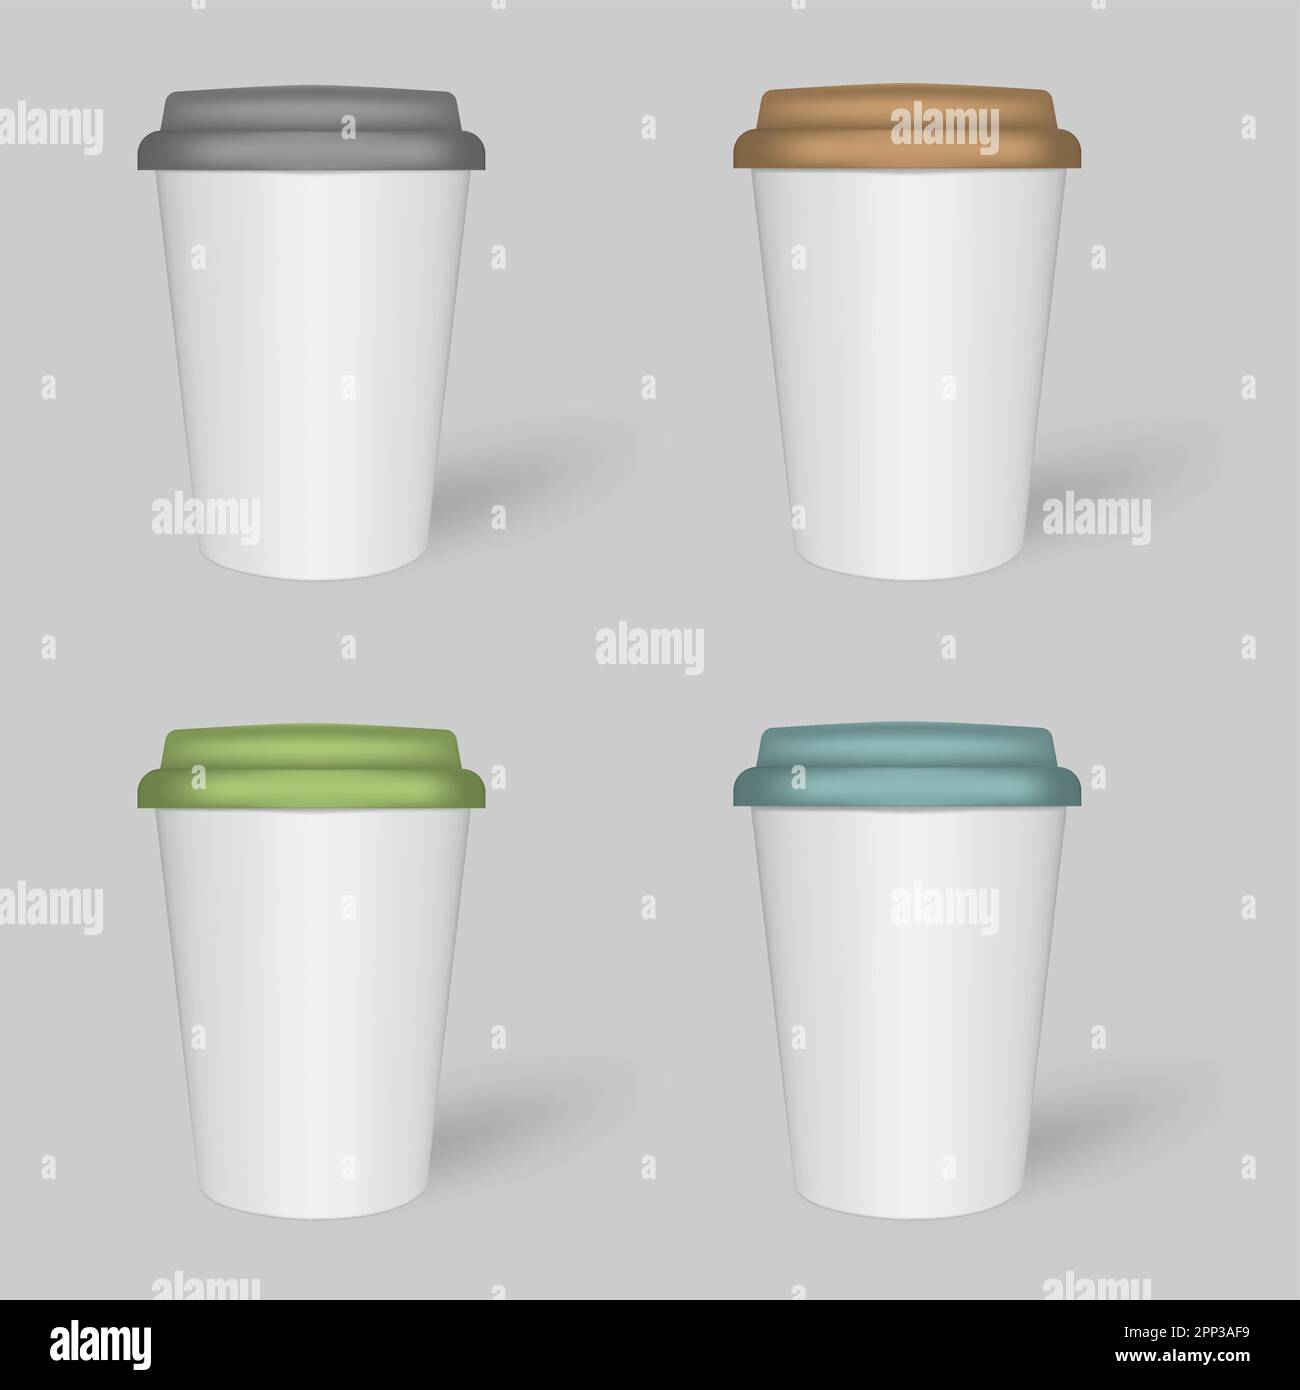 Weiße Kaffeetasse mit farbigem Deckel, Modell-Set. Reisebecher für heiße und kalte Getränke, Modell. Vektorvorlage Stock Vektor